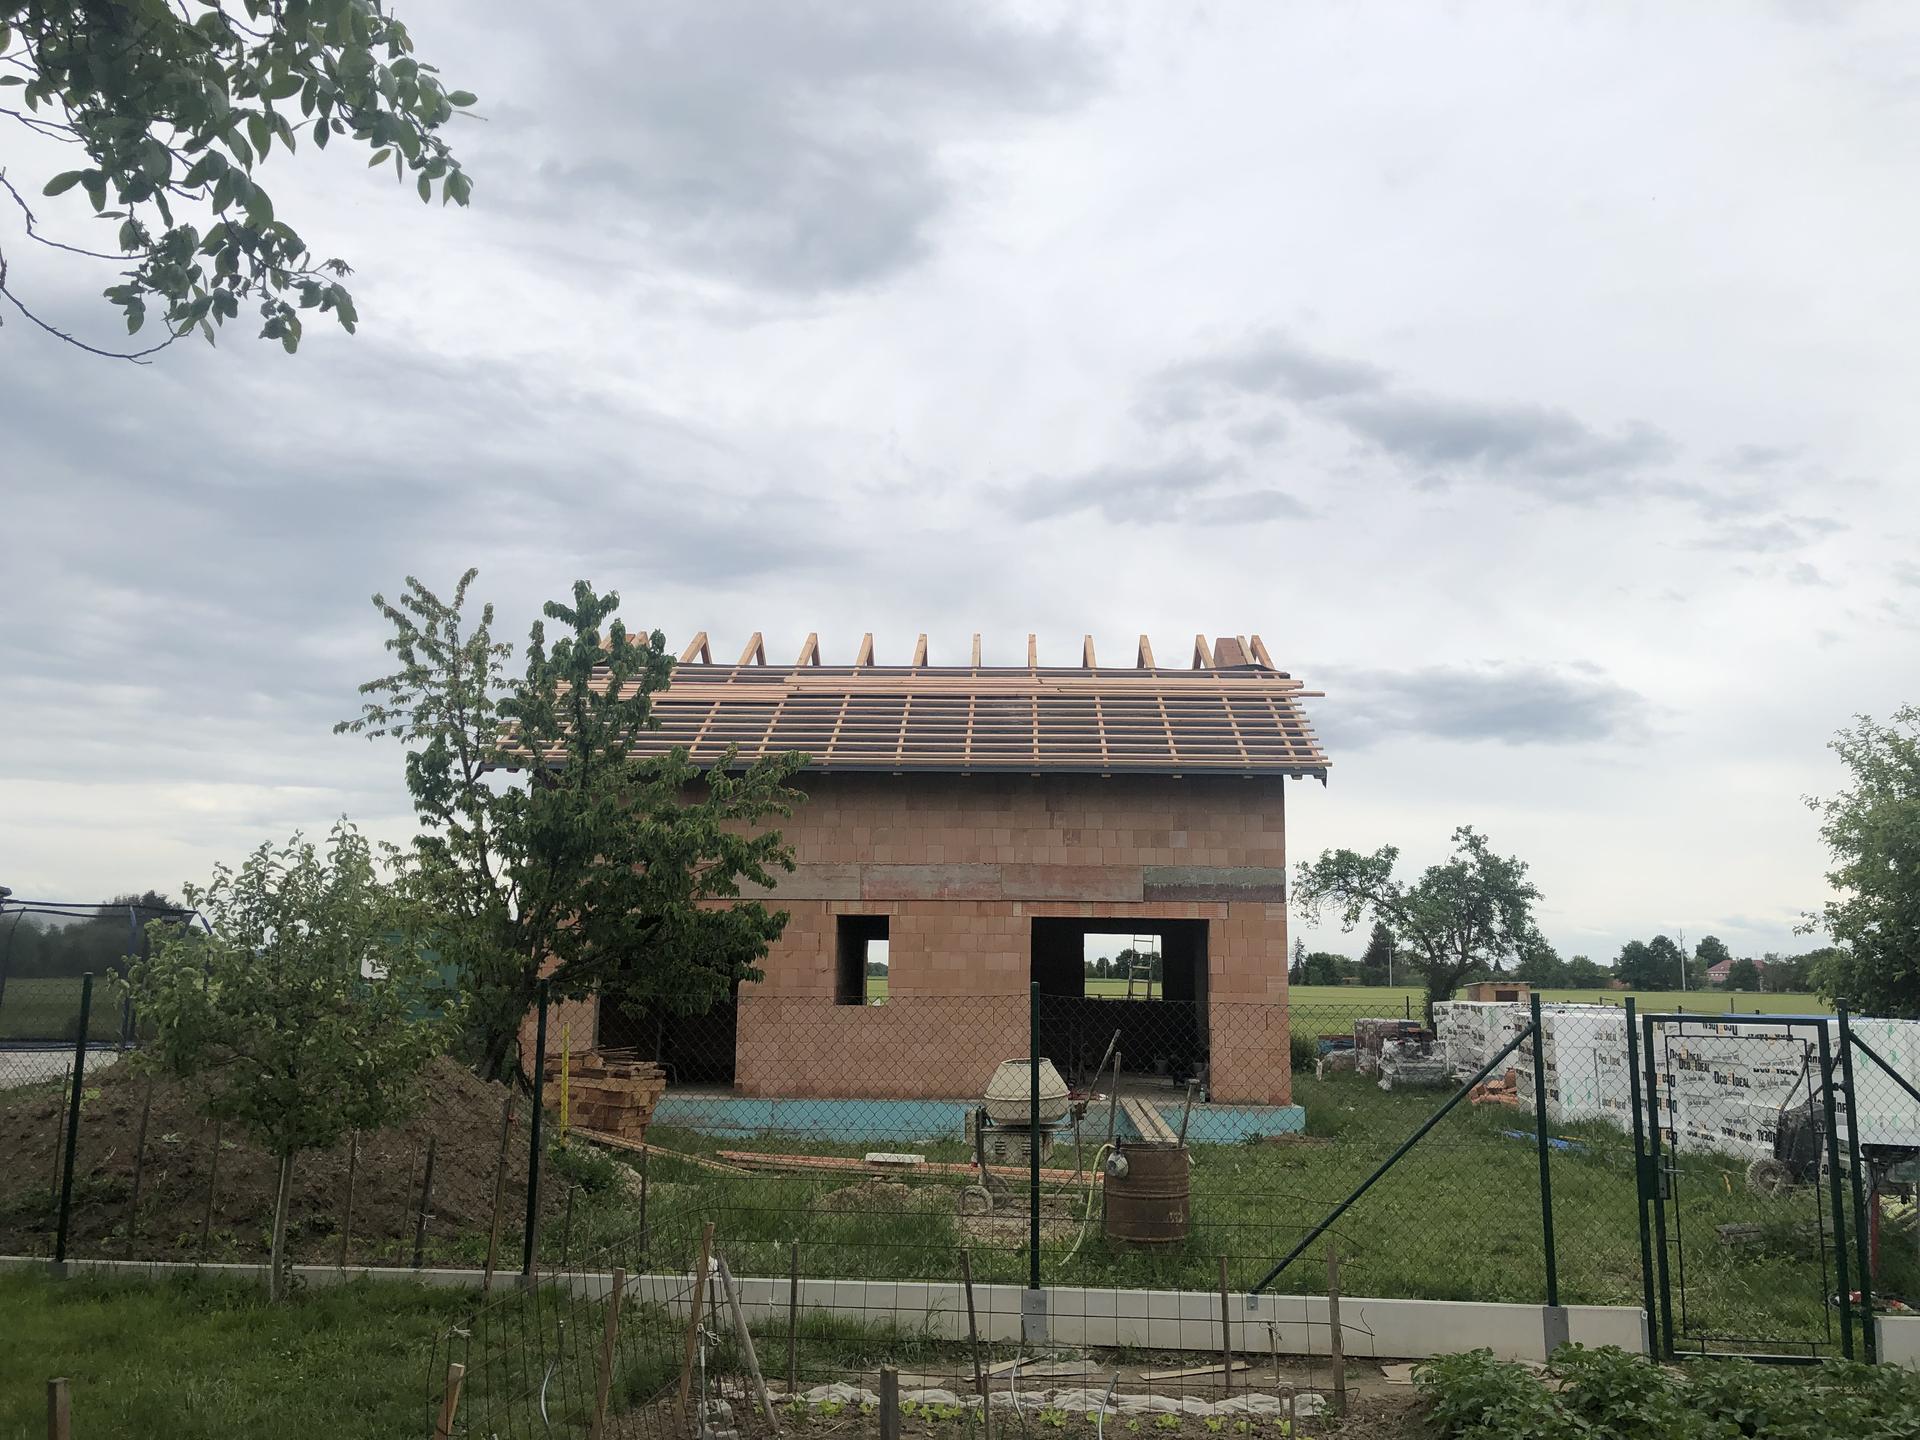 Náš domek, budoucí domov. - Konečne začínáme dělat střechu:)